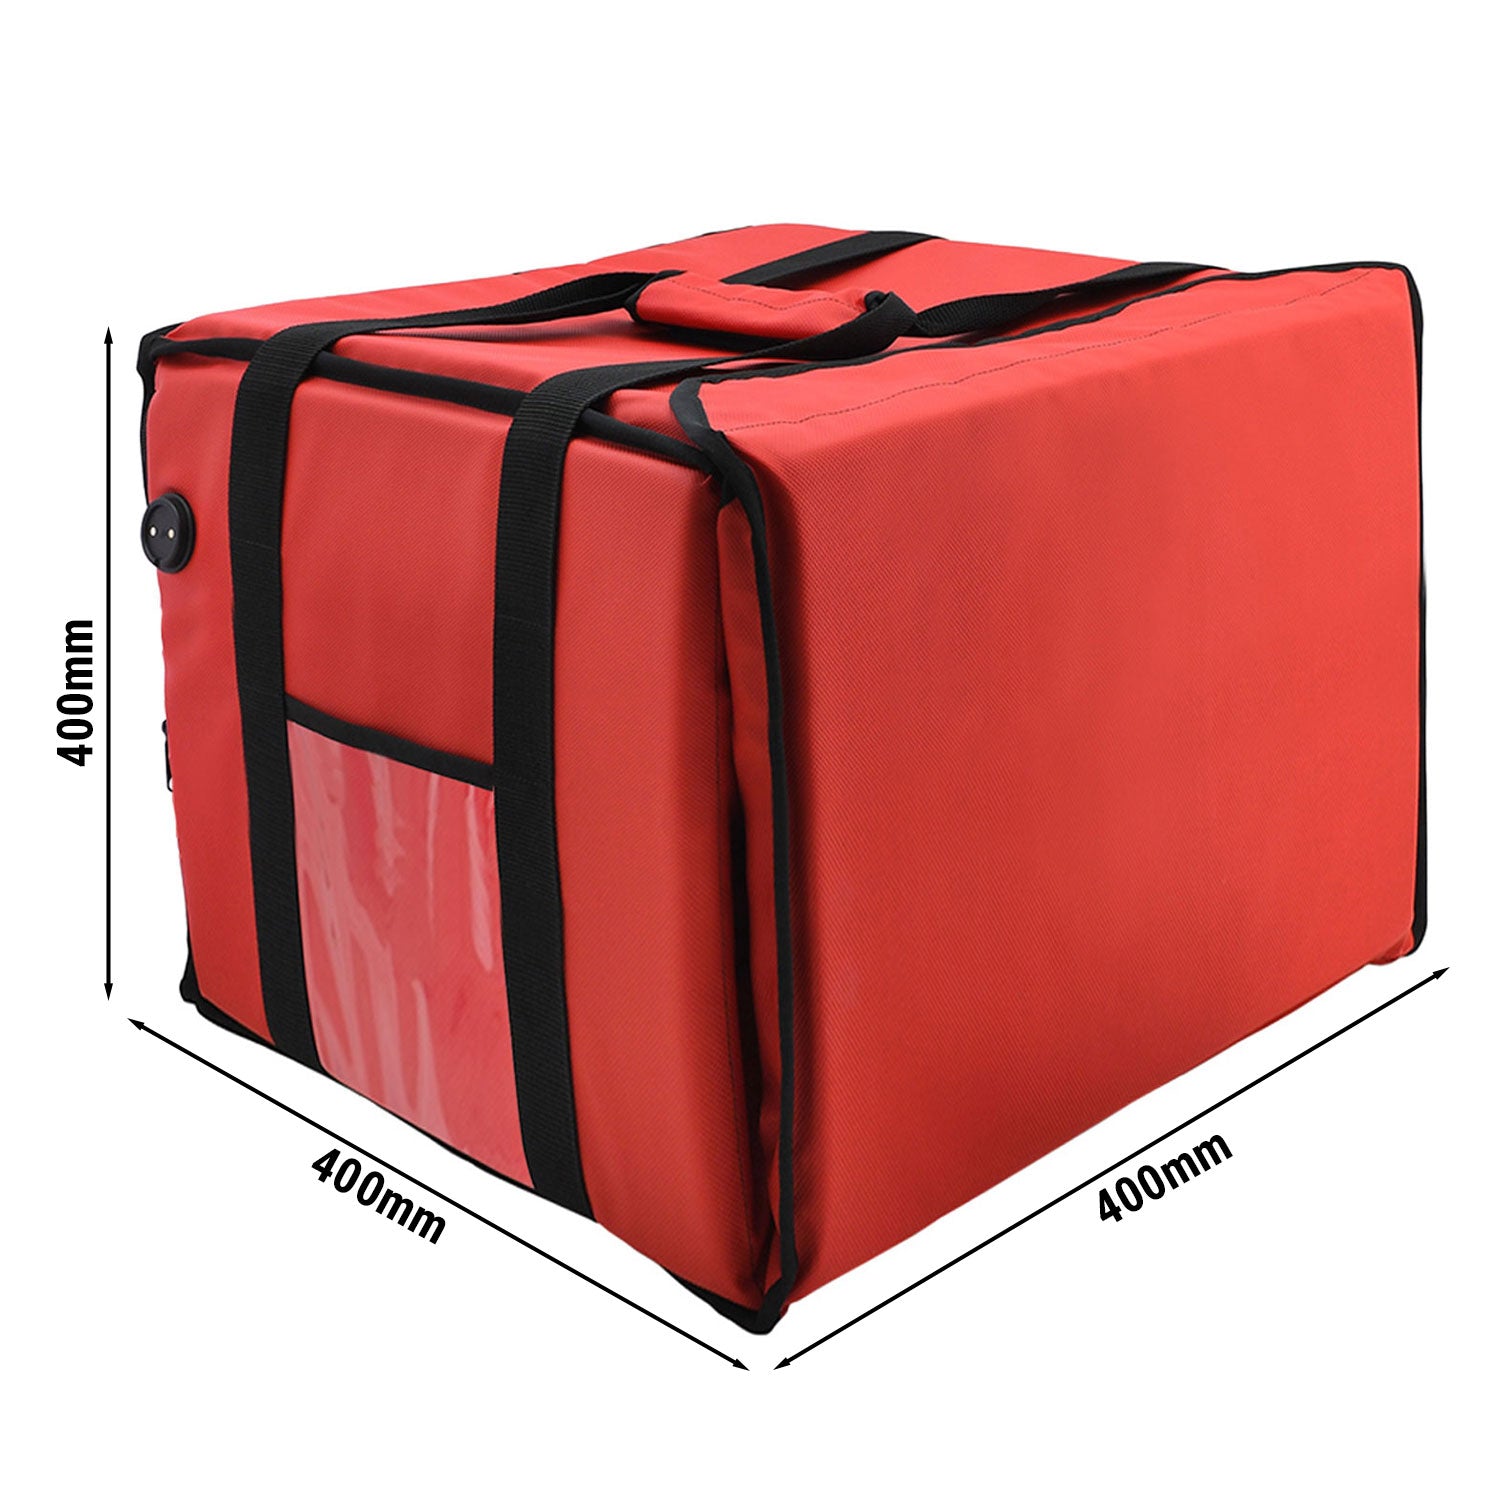 WarmBag/ Pizzabag PRO - 40 x 40 x 40 cm - електрически нагреваема - червена